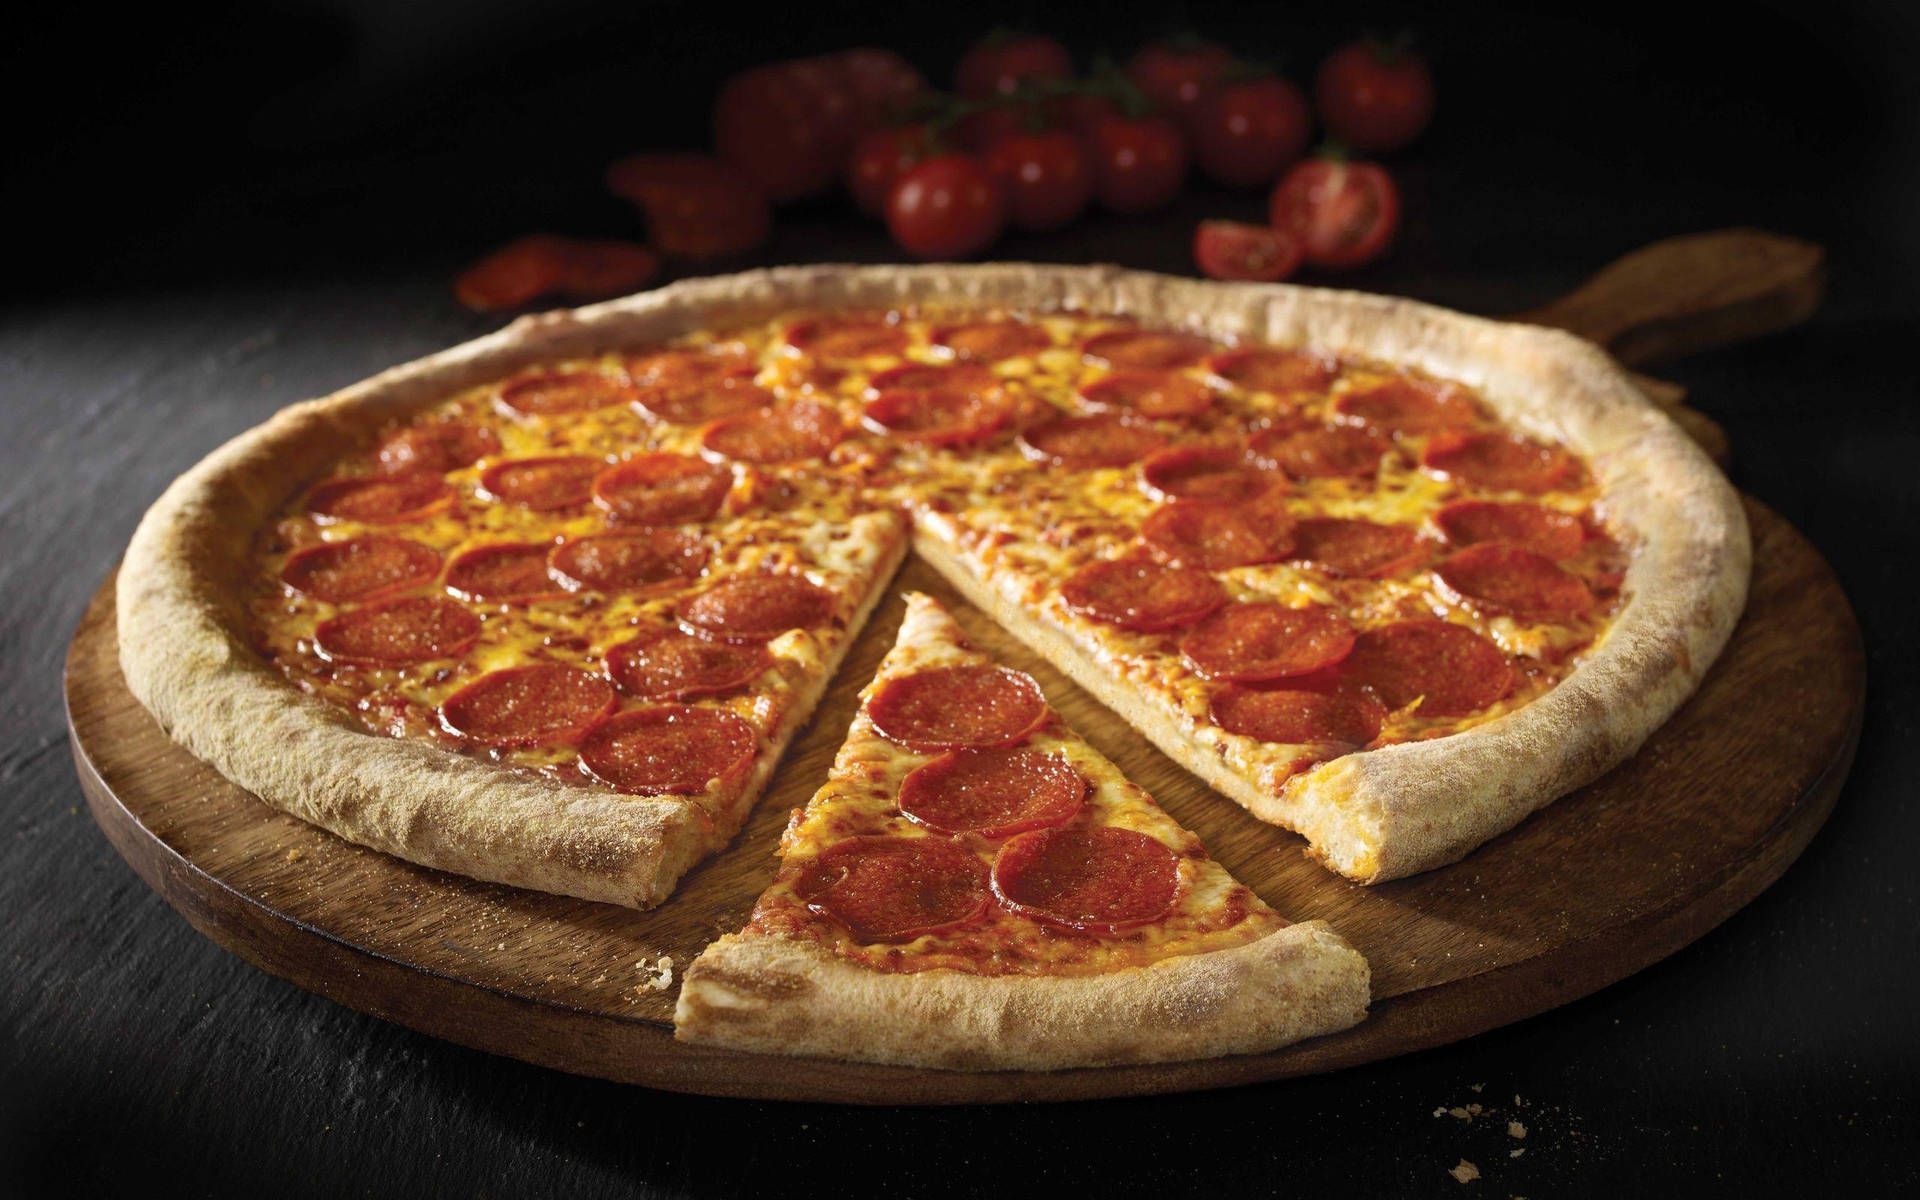 Motivere dit skrivebord med et motiv af en pepperonipizza fra Pizza Hut. Wallpaper